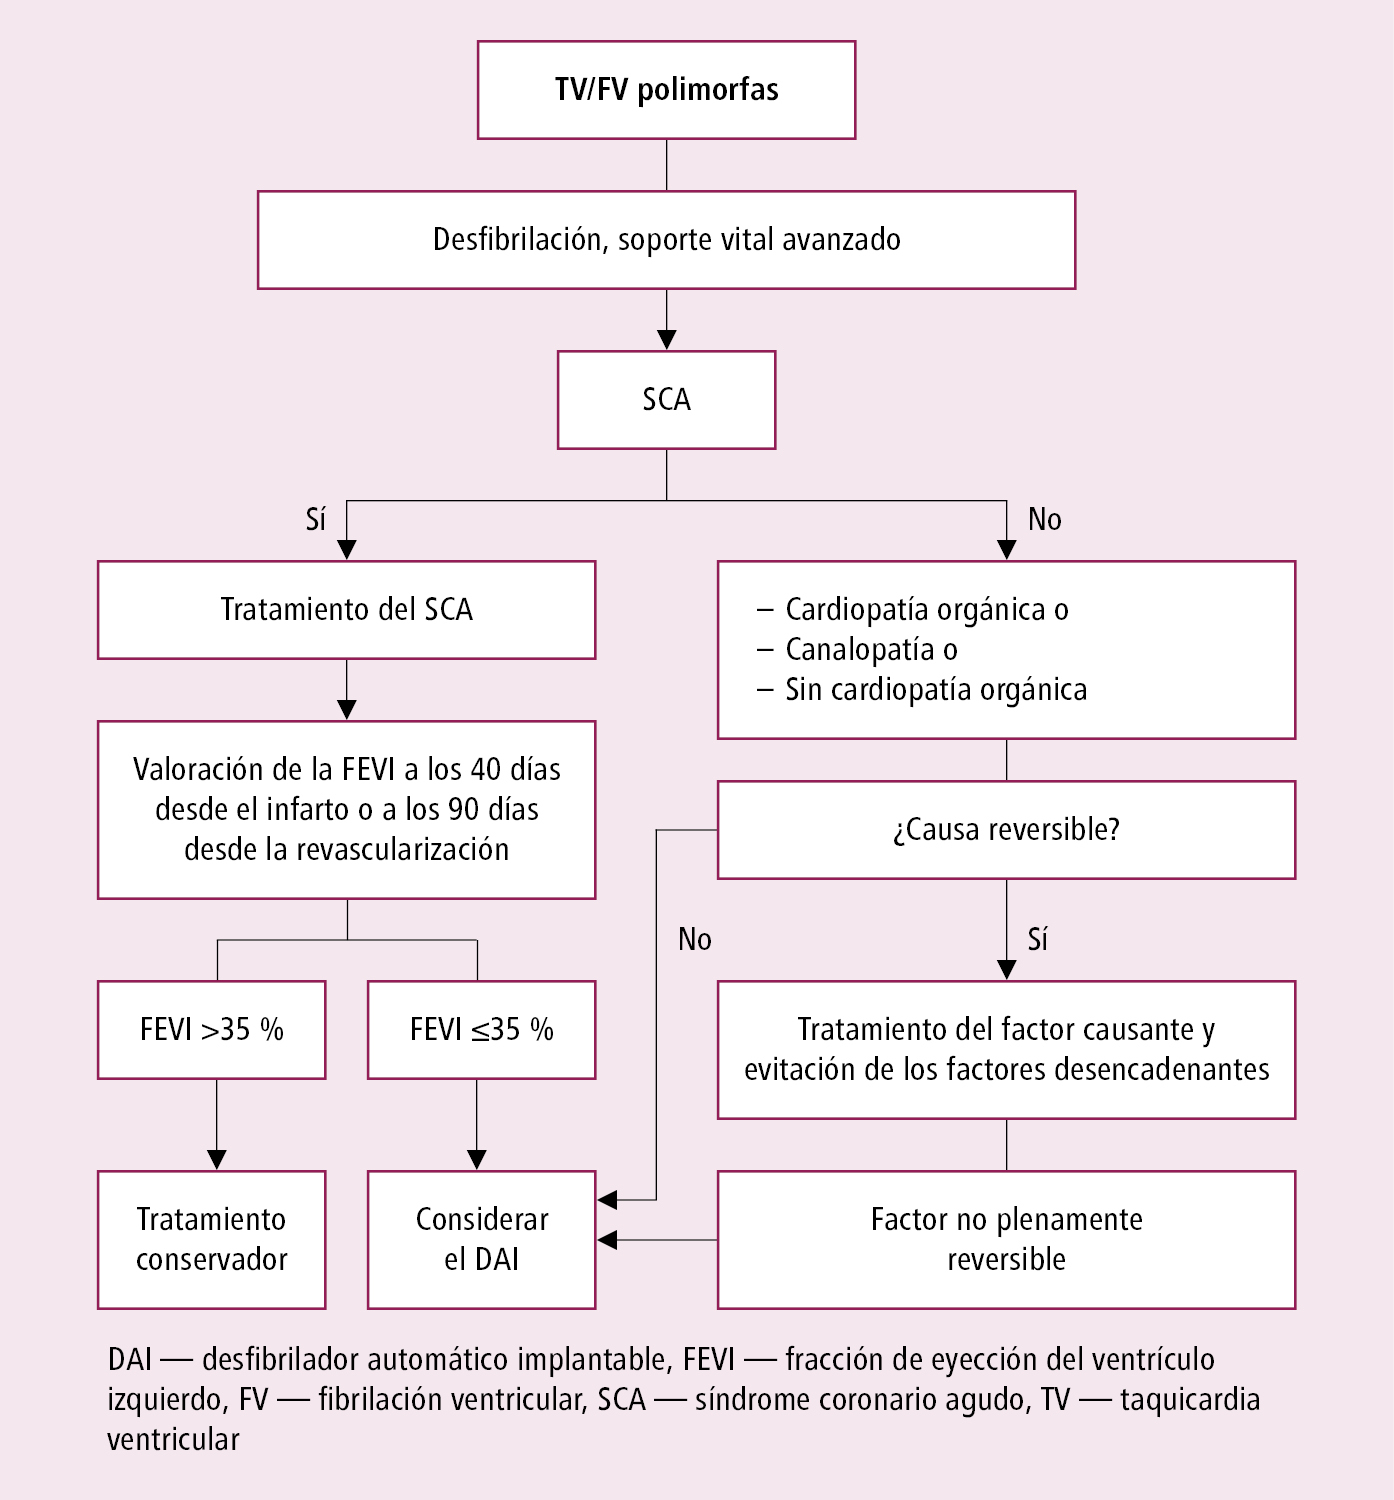    Fig. 2.6-7.  Actuación en enfermos con taquicardia o fibrilación ventricular (a partir de la posición acordada de expertos de EHRA, HRS y APHRS 2014, modificada) 